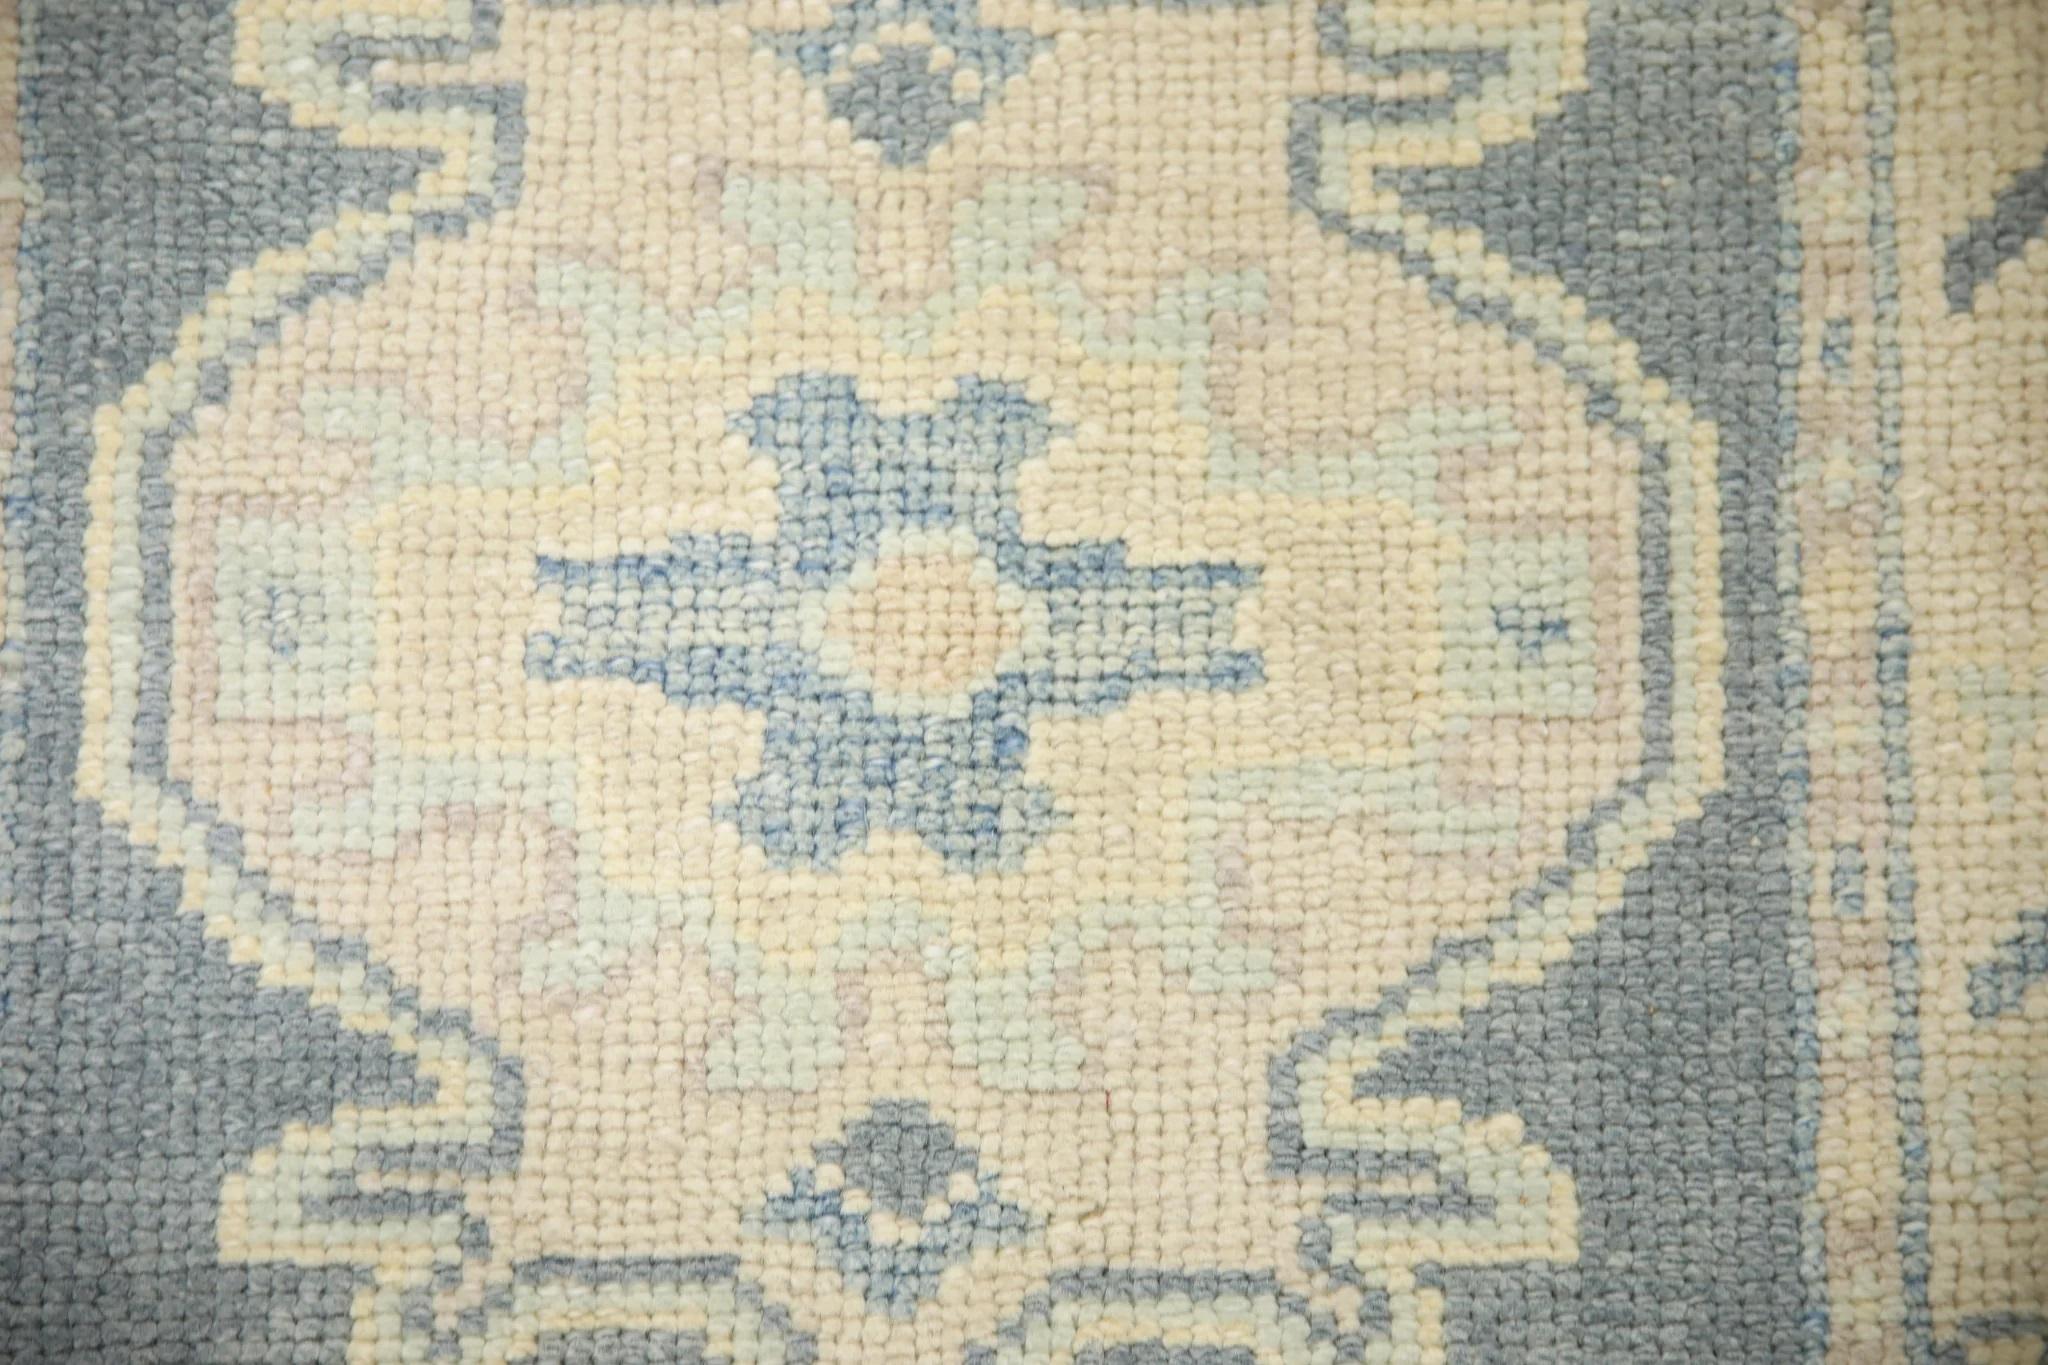 Dieser türkische Oushak-Teppich ist ein atemberaubendes Kunstwerk, das von erfahrenen Kunsthandwerkern mit traditionellen Techniken handgewebt wurde. Der Teppich weist komplizierte Muster und eine weiche Farbpalette auf, die durch die Verwendung